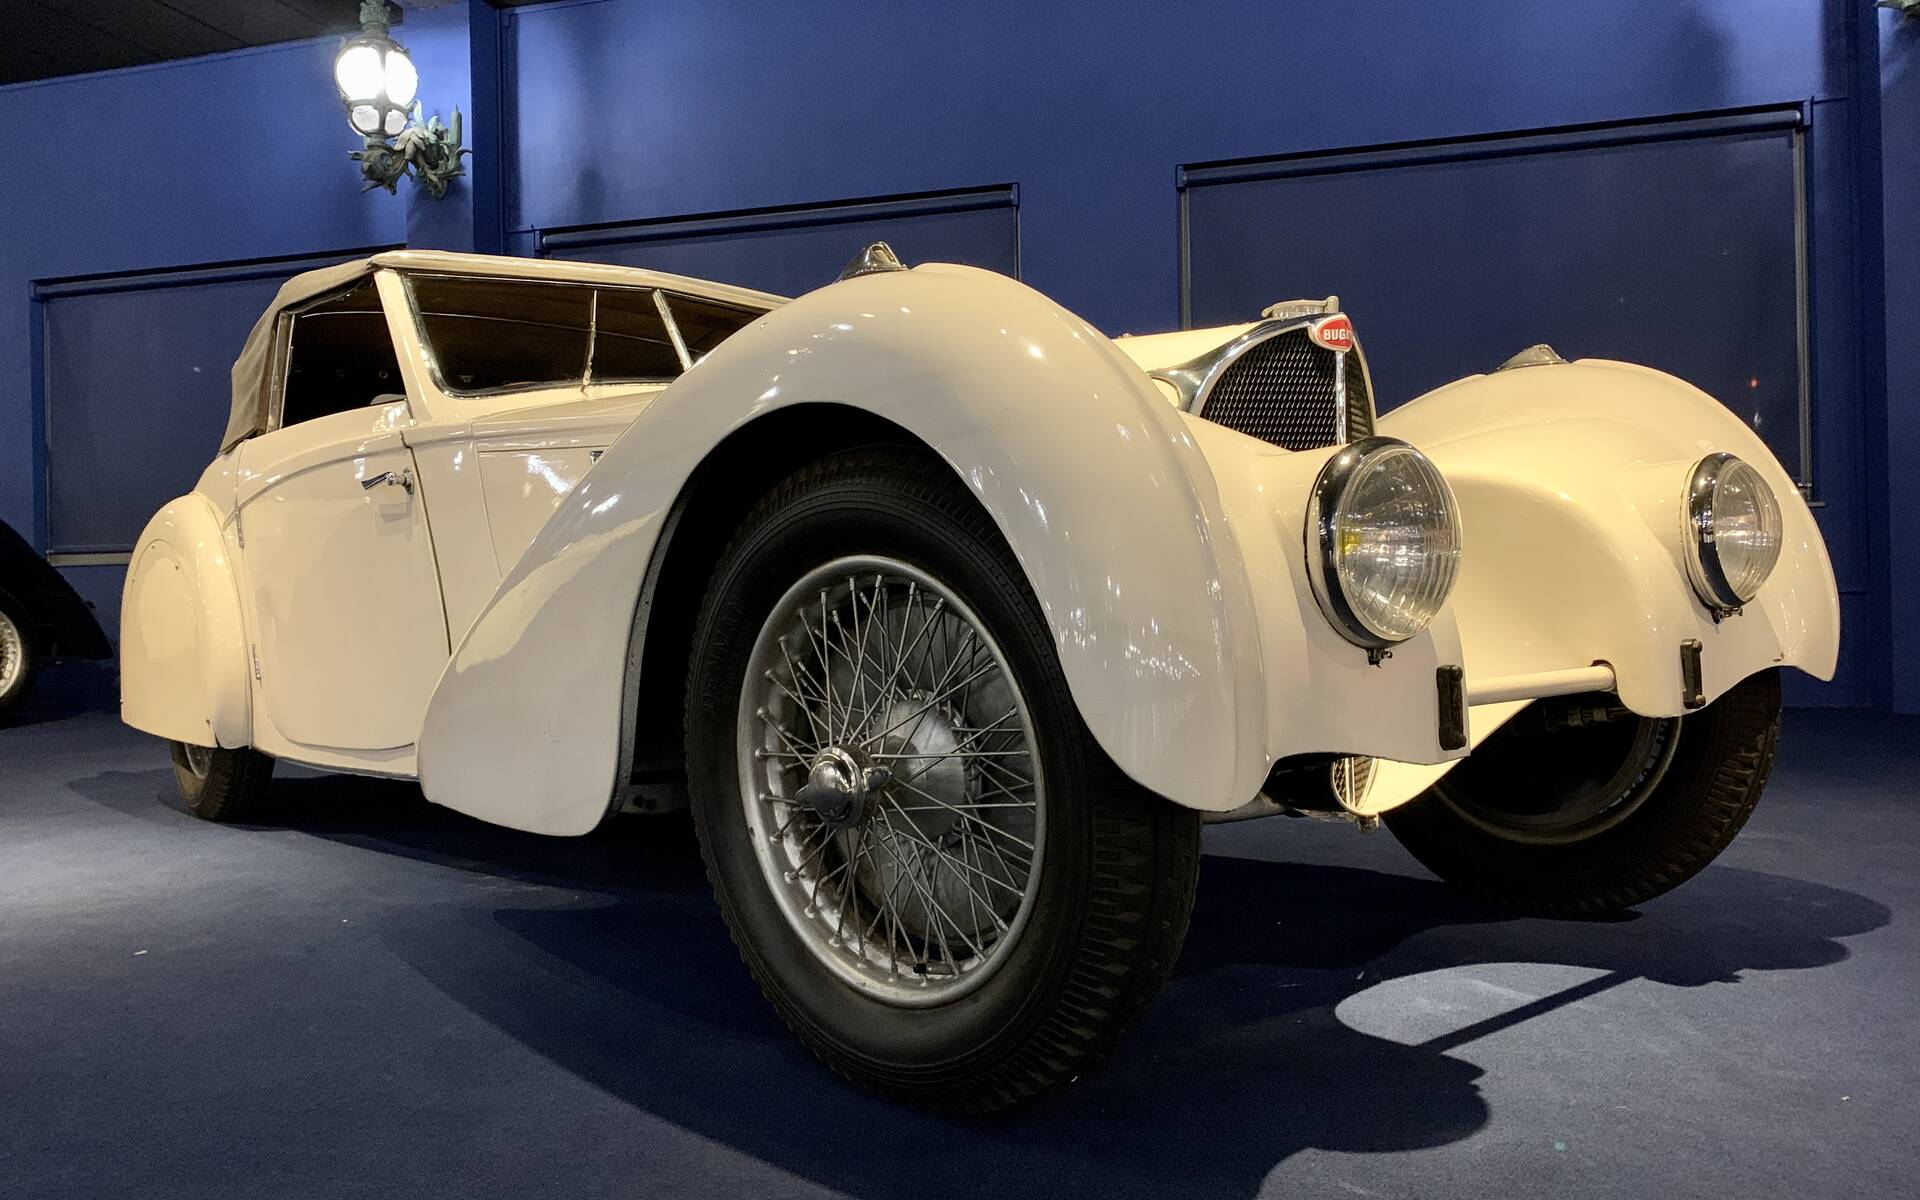 En photos : une centaine de Bugatti réunies dans un même musée 503105-en-photos-des-dizaines-de-bugatti-reunies-dans-un-meme-musee